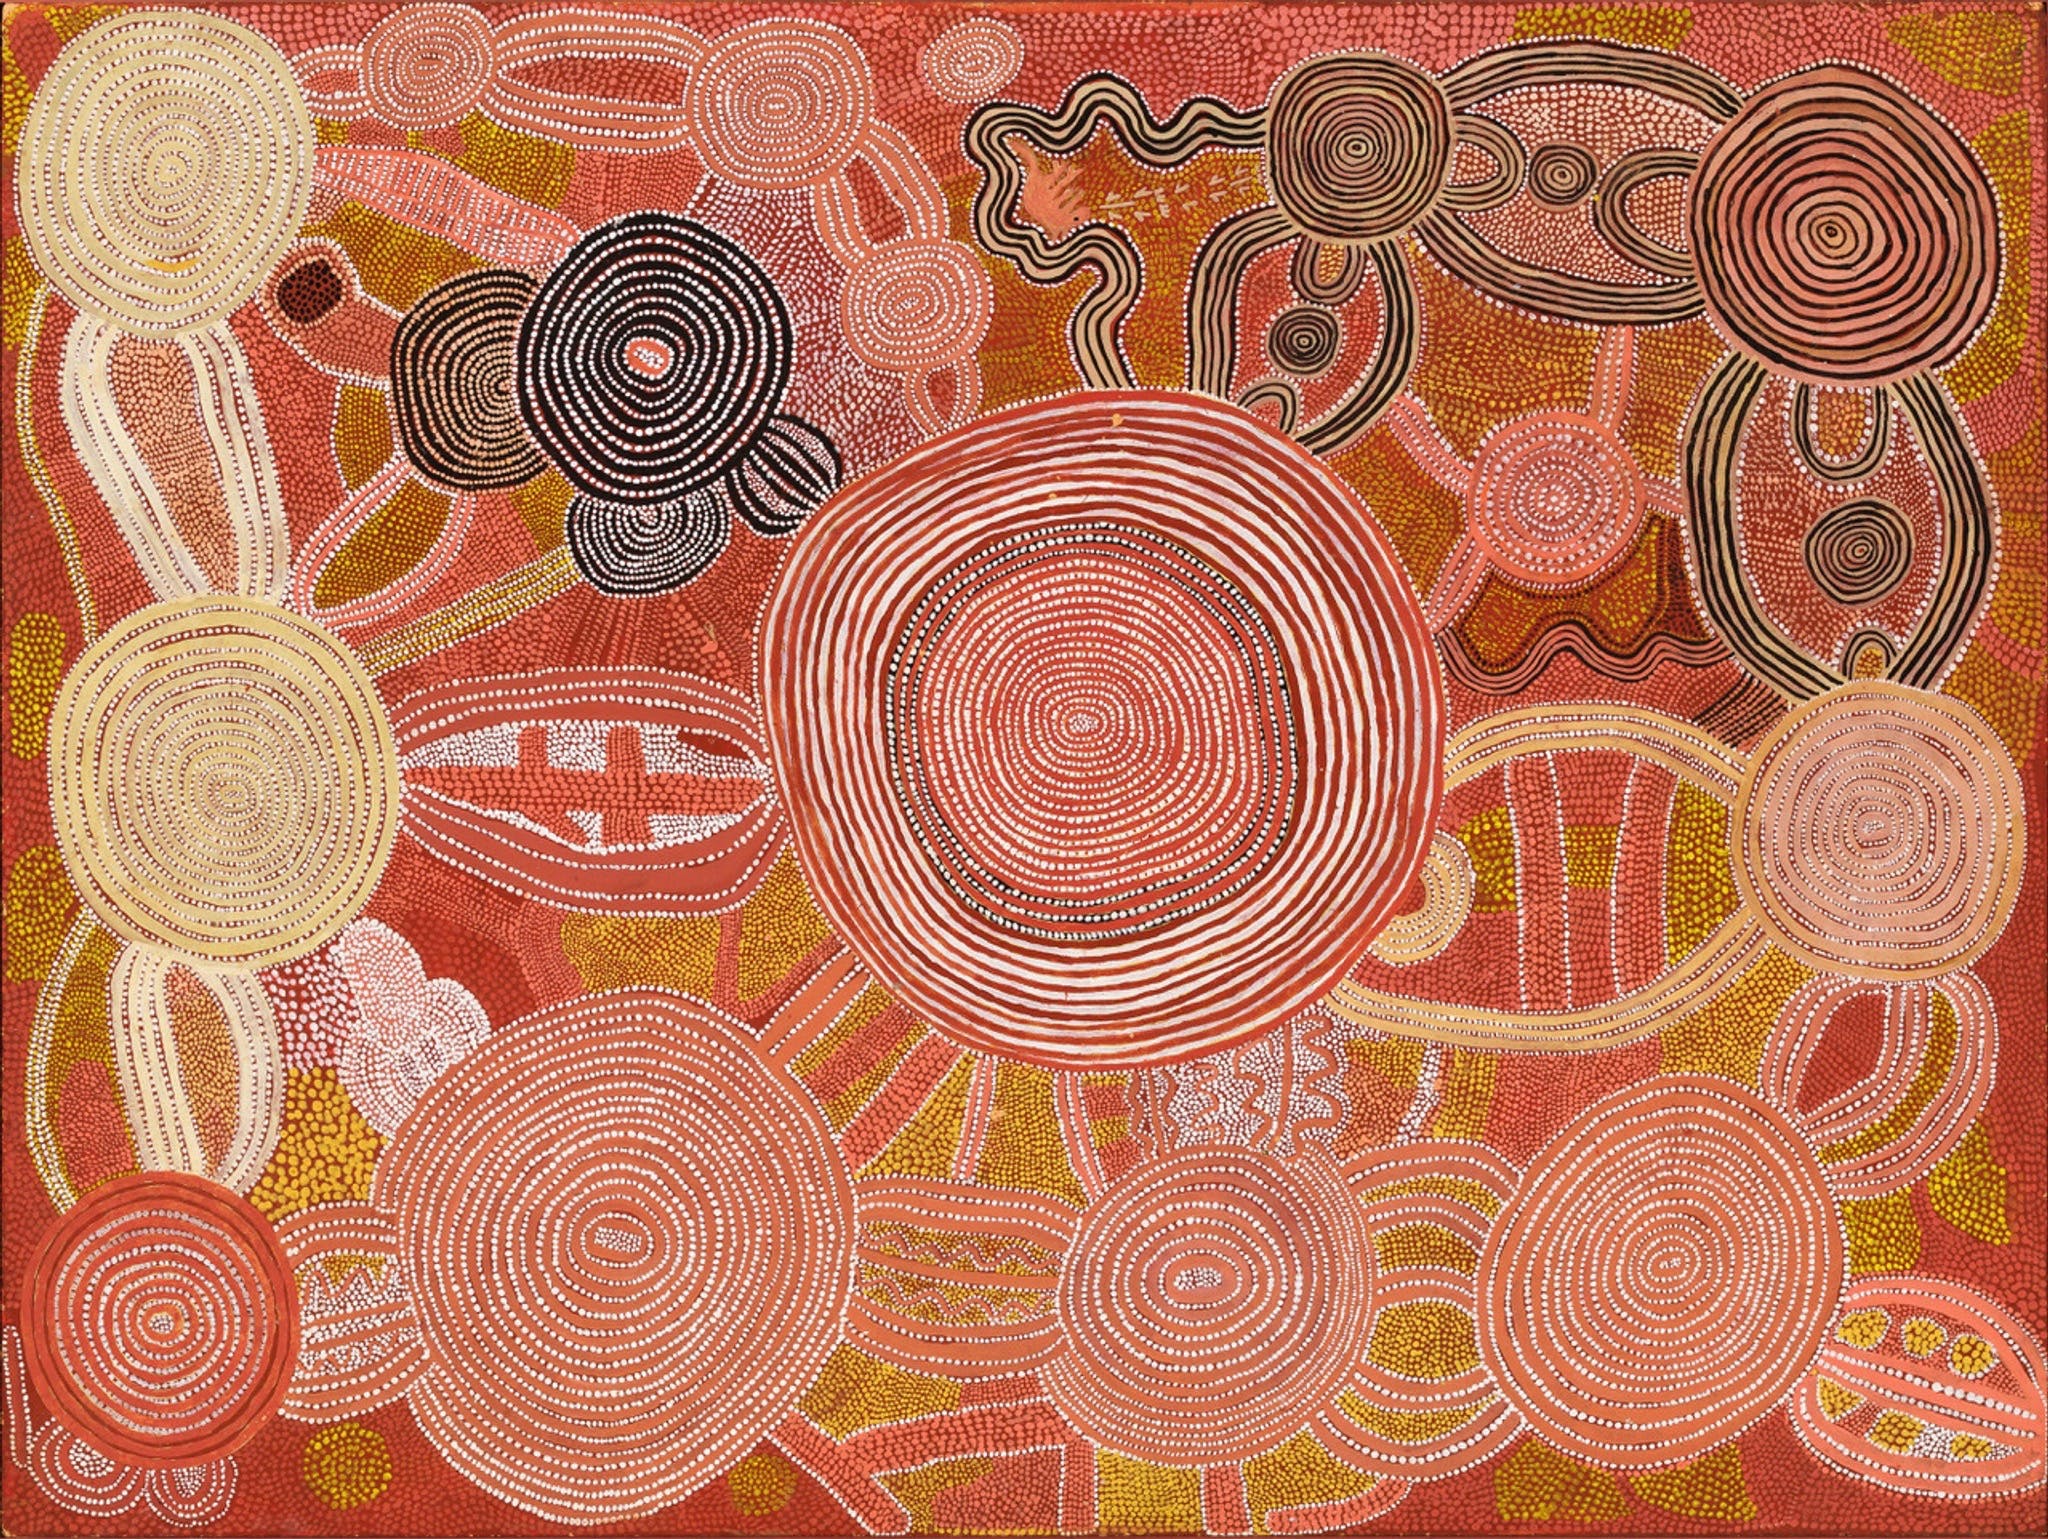 Reverence Exhibition of Australian Indigenous Art - Accommodation Mt Buller